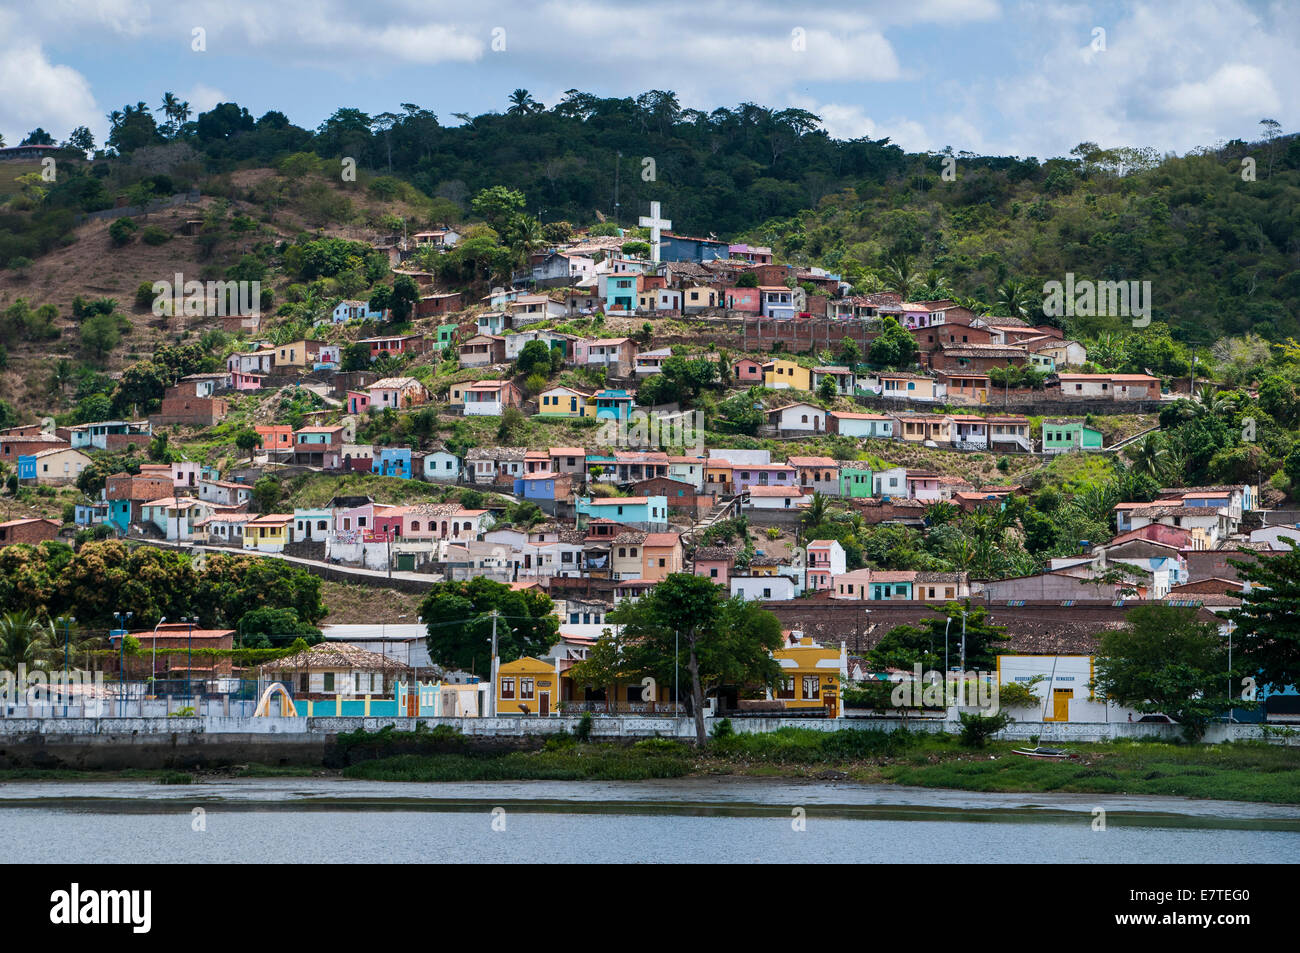 Paysage aux maisons colorées, Cachoeira, Bahia, Brésil Banque D'Images